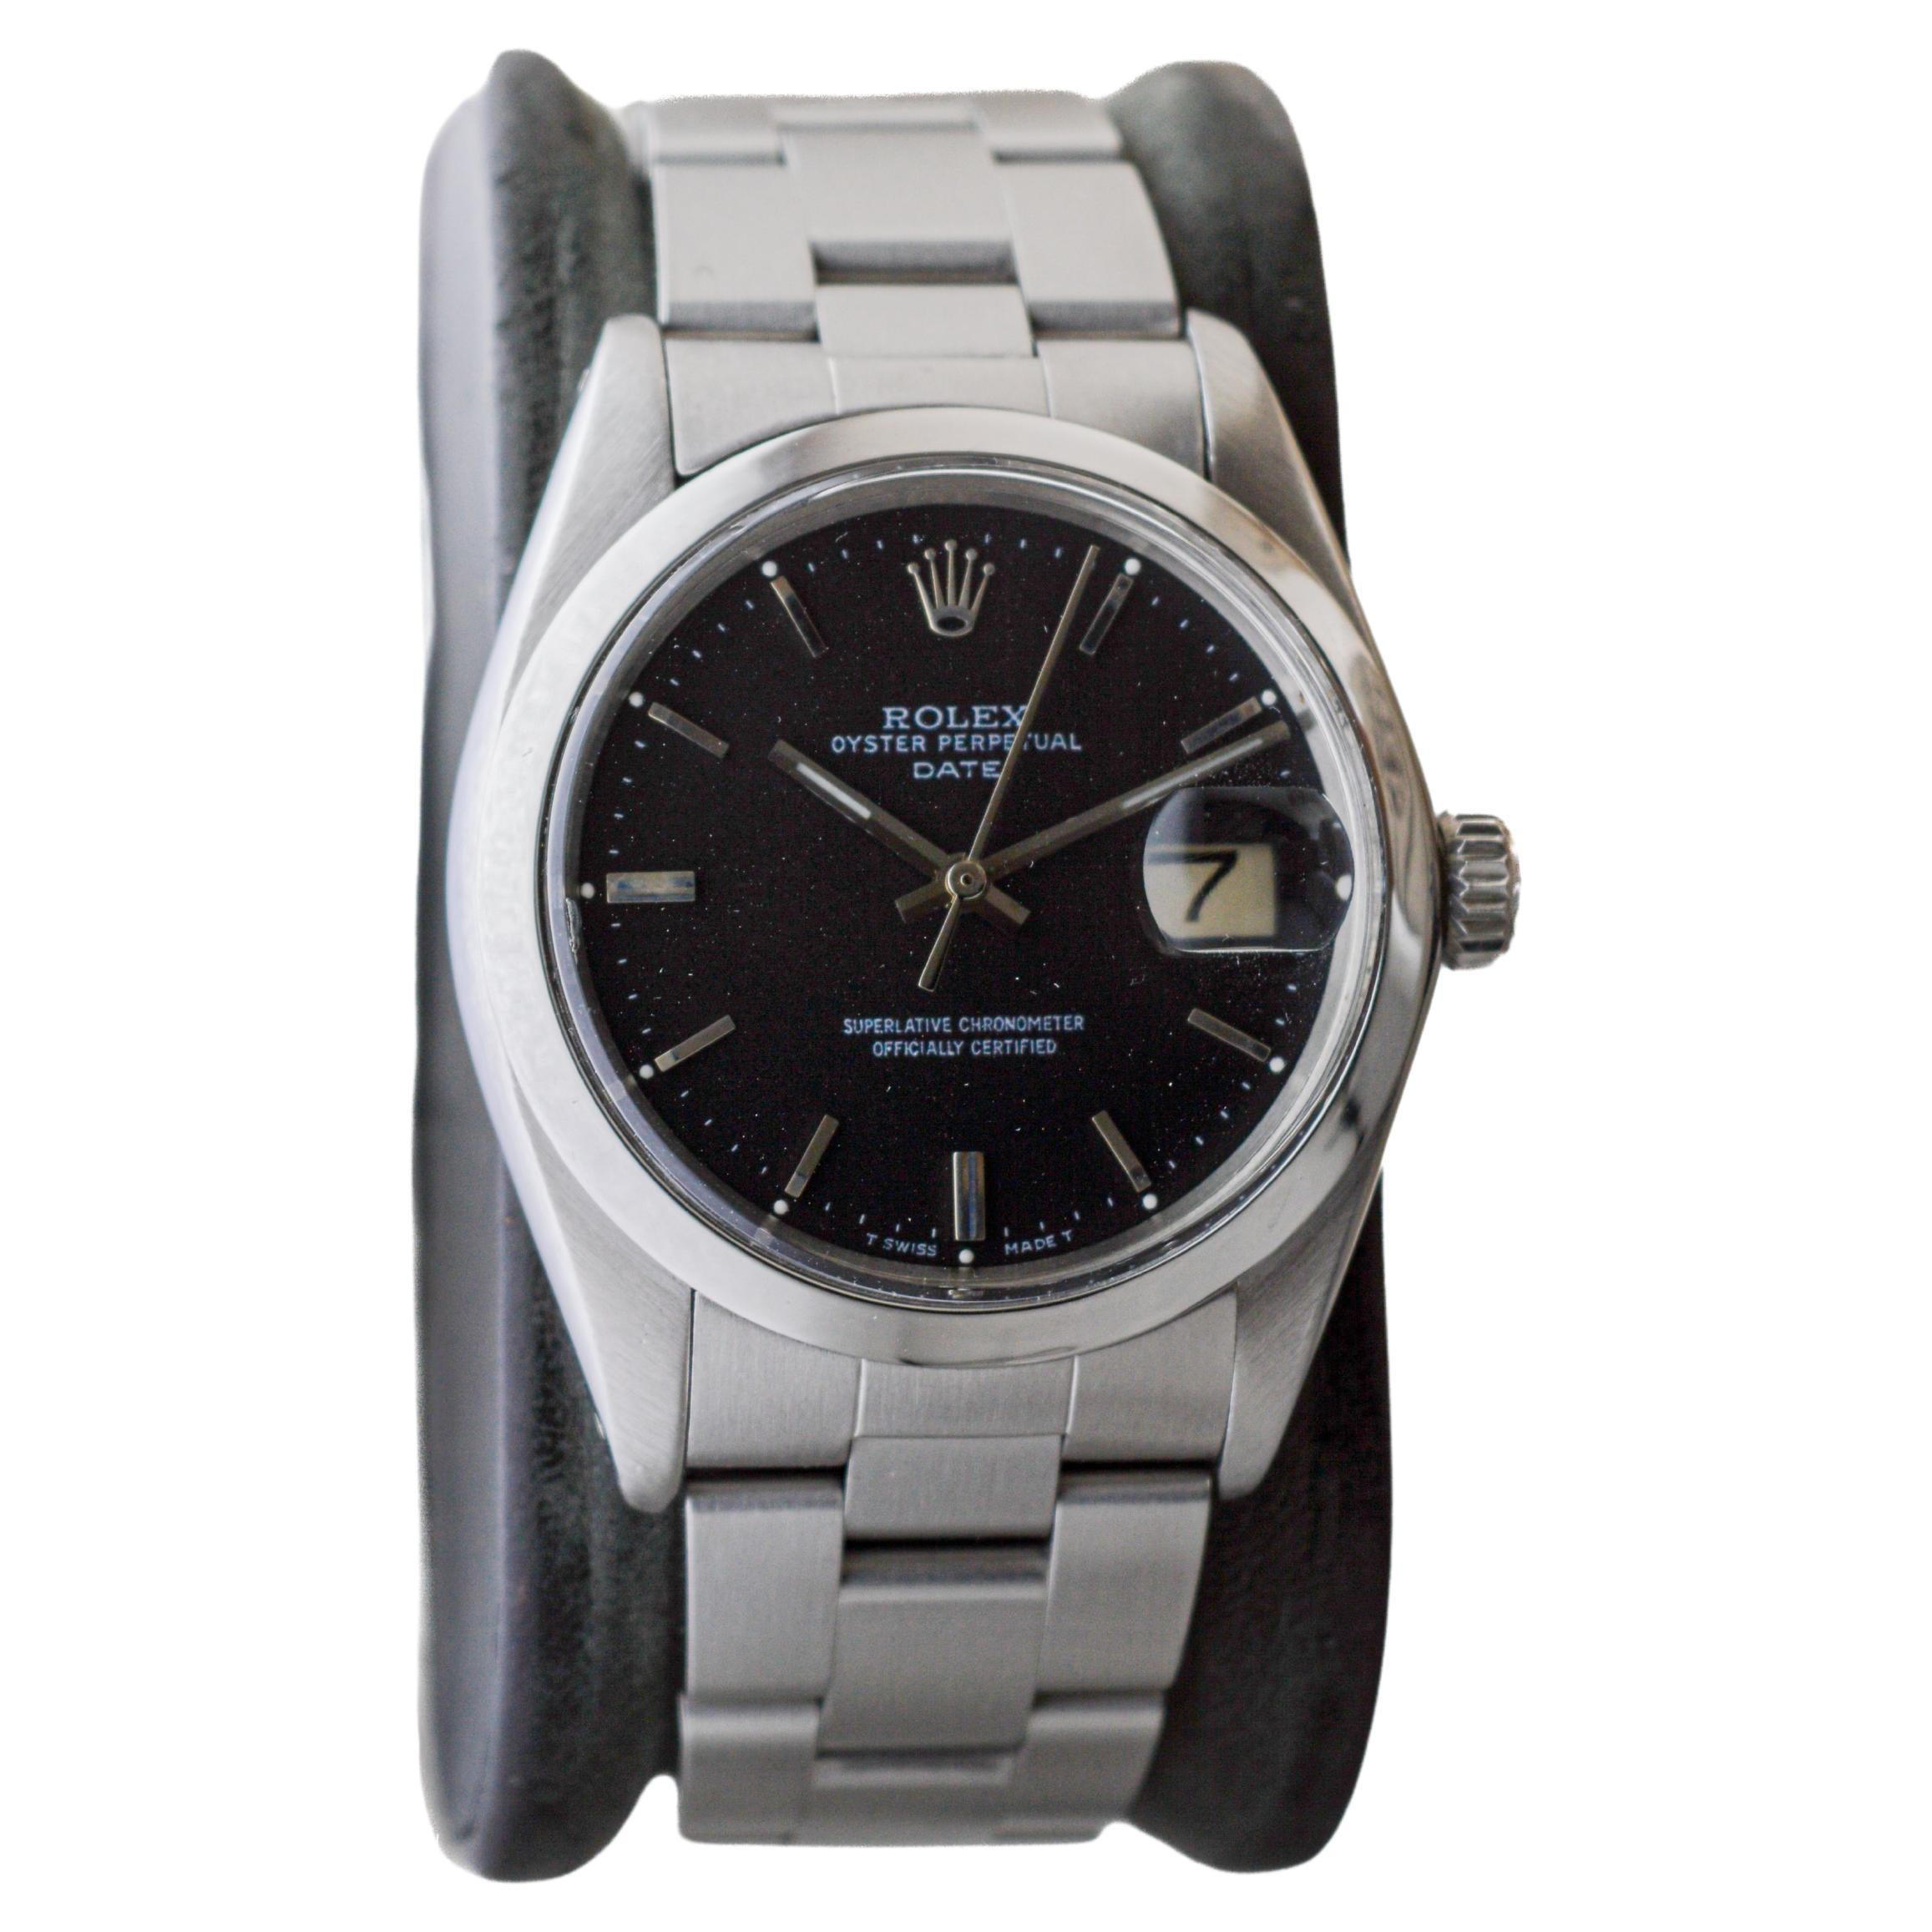 FABRIK / HAUS: Rolex Watch Company
STIL / REFERENZ: Oyster Perpetual Date / Referenz 1500
METALL / MATERIAL: Rostfreier Stahl
CIRCA / JAHR: 1970er Jahre
ABMESSUNGEN / GRÖSSE: Länge 43mm X Durchmesser 35mm
UHRWERK / KALIBER: Ewiger Aufzug / 26 Jewels